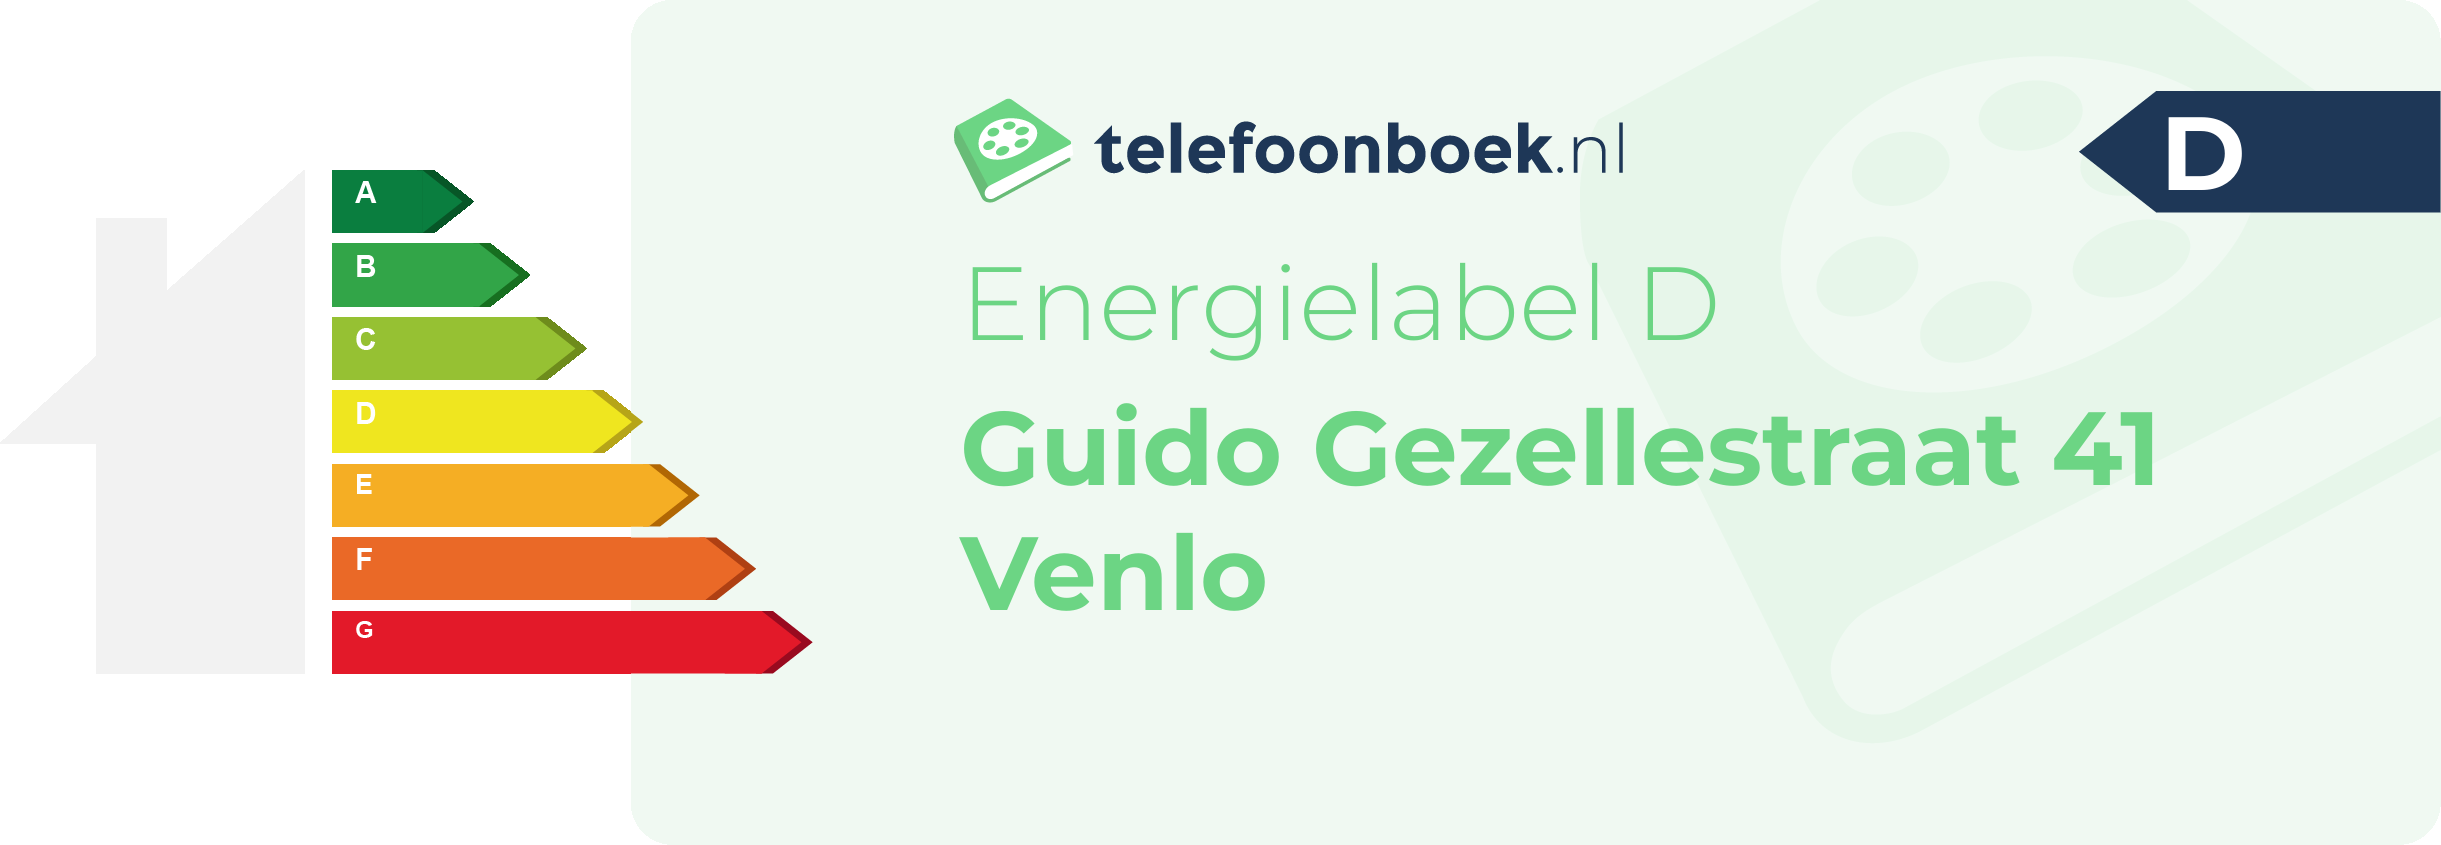 Energielabel Guido Gezellestraat 41 Venlo